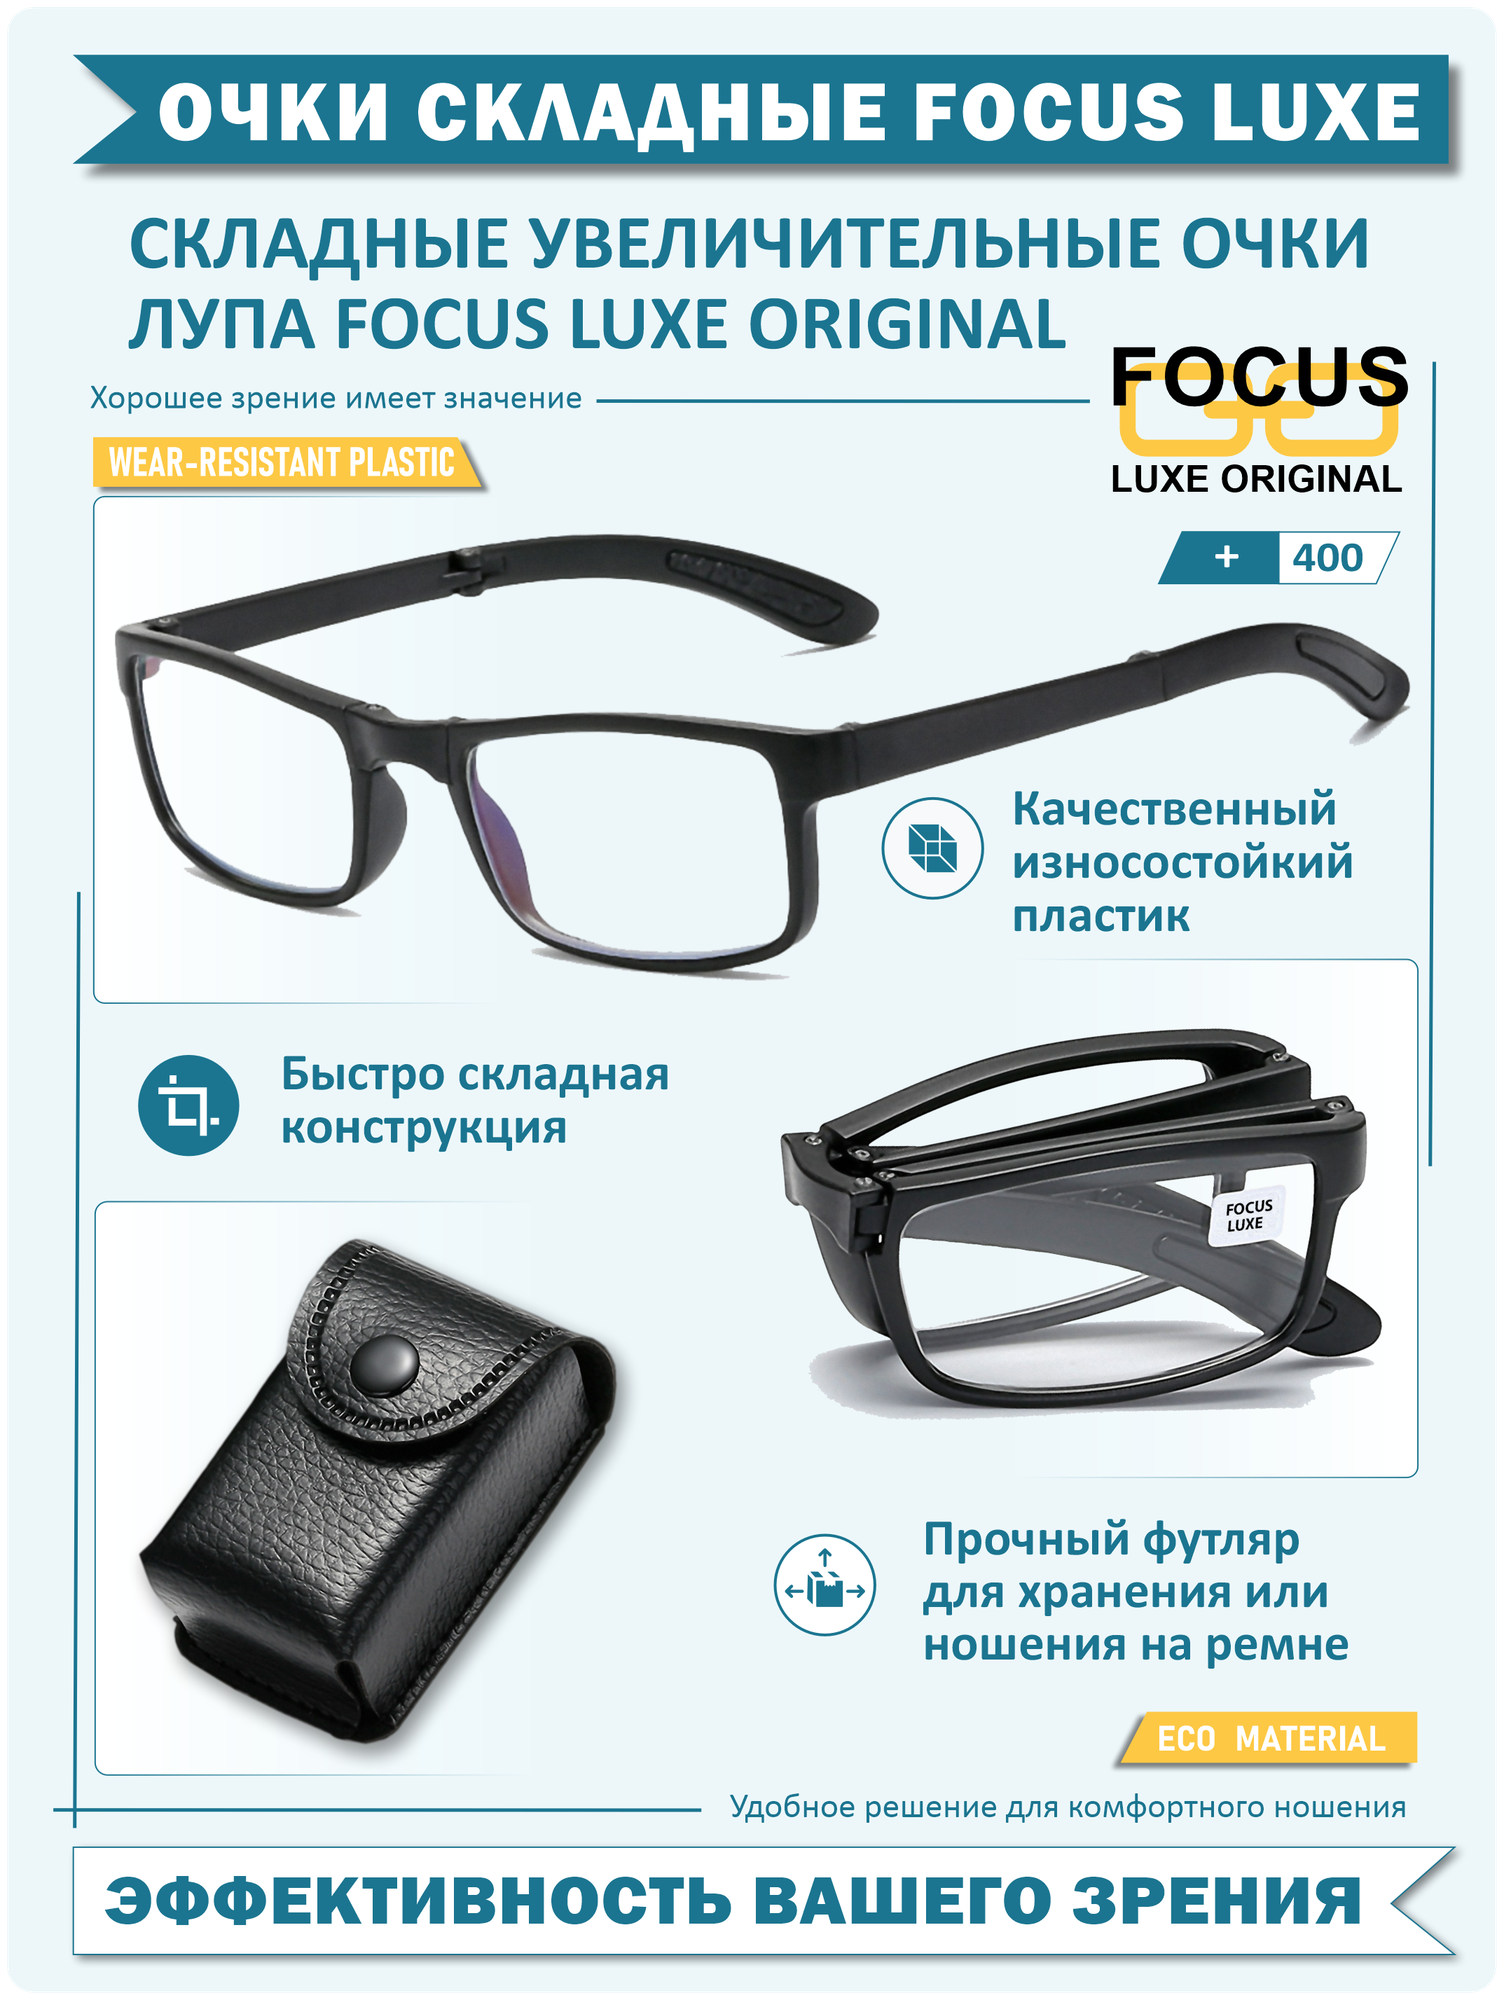 Складные увеличительные очки Focus Luxe Original